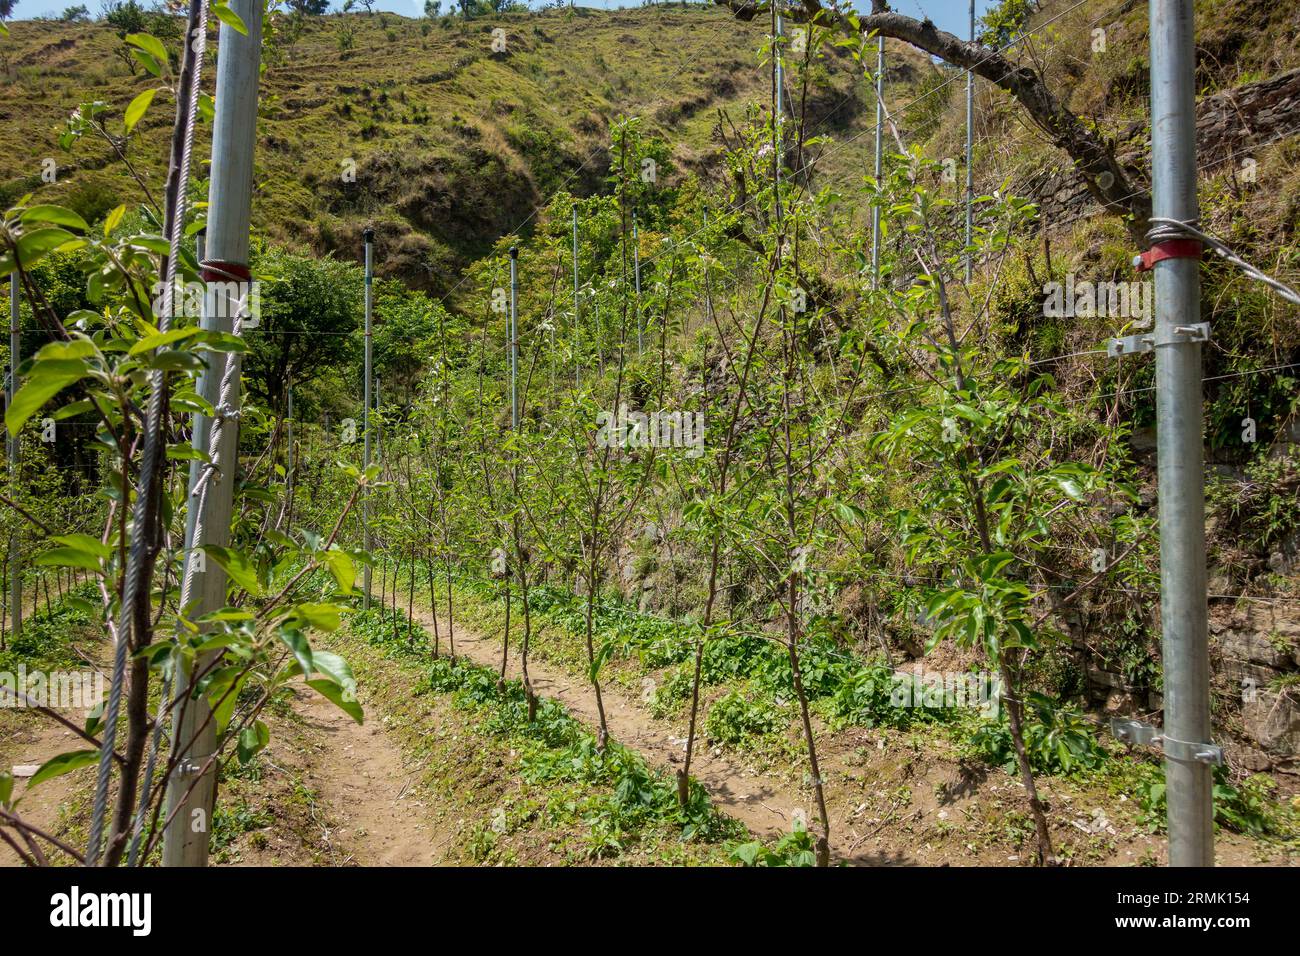 Huertos de manzanas en las laderas de Uttarakhand en Tehri Garhwal, con técnicas avanzadas de cultivo. Explore el cultivo técnico en medio de un paisaje impresionante Foto de stock